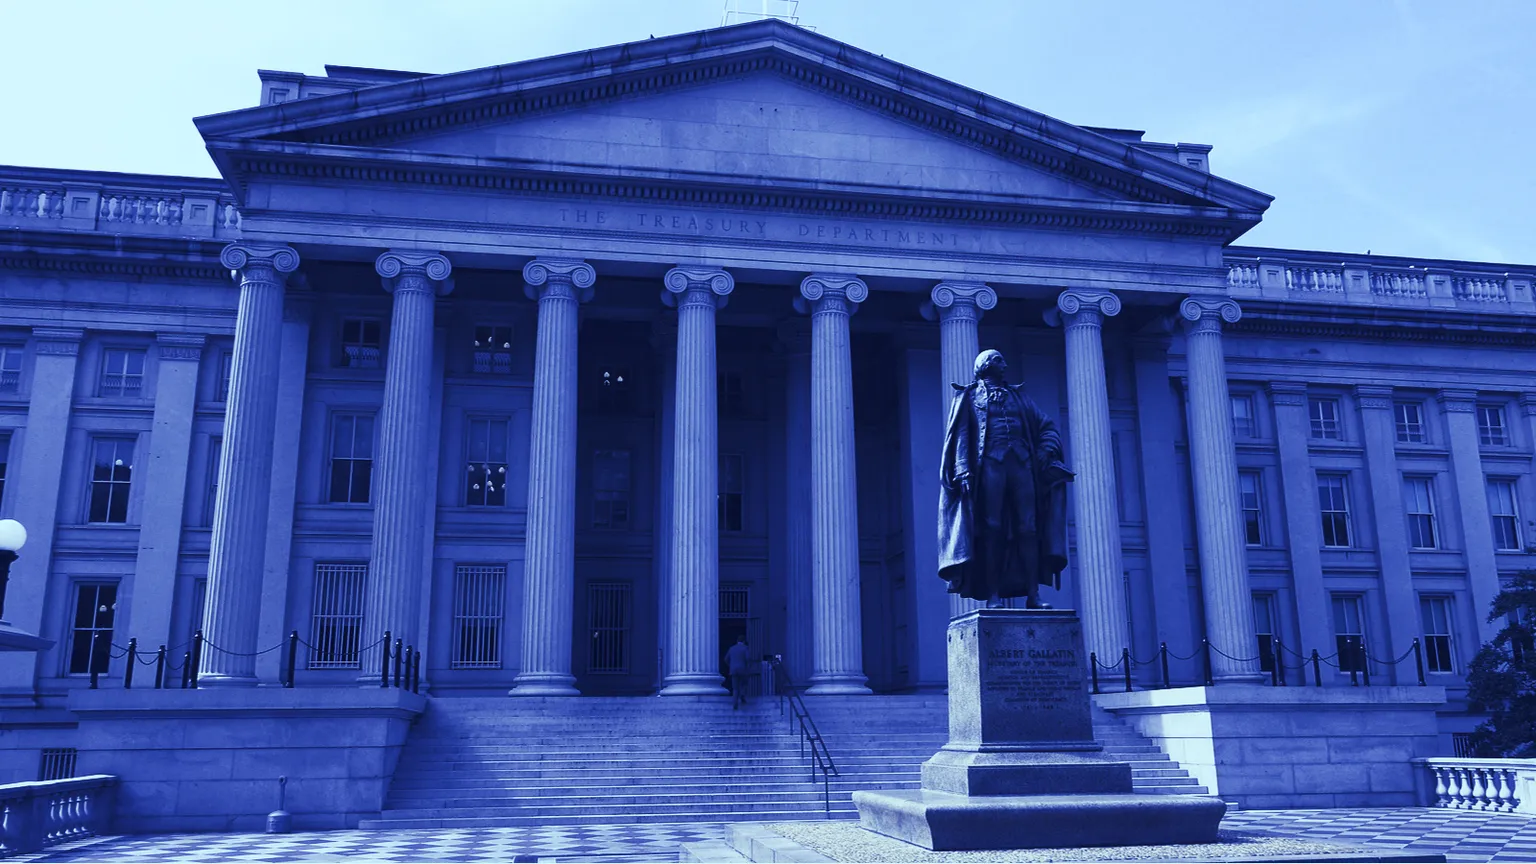 El Departamento del Tesoro de los Estados Unidos. Imagen: Shutterstock